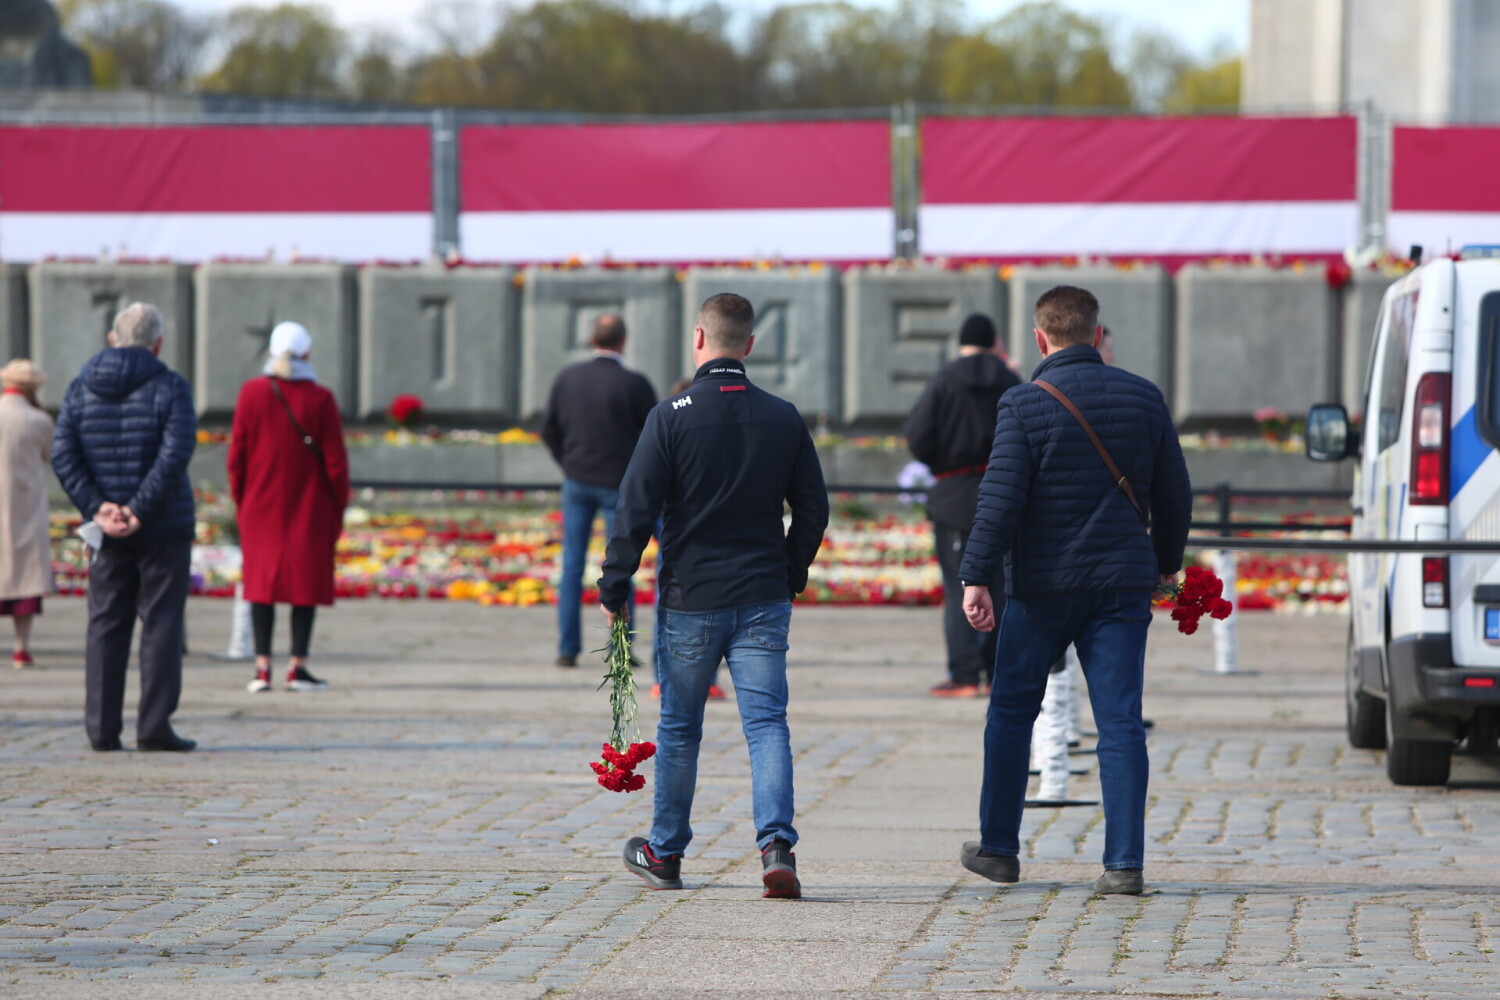 苏联纪念碑前的鲜花被铲走后，拉脱维亚民众又给摆满